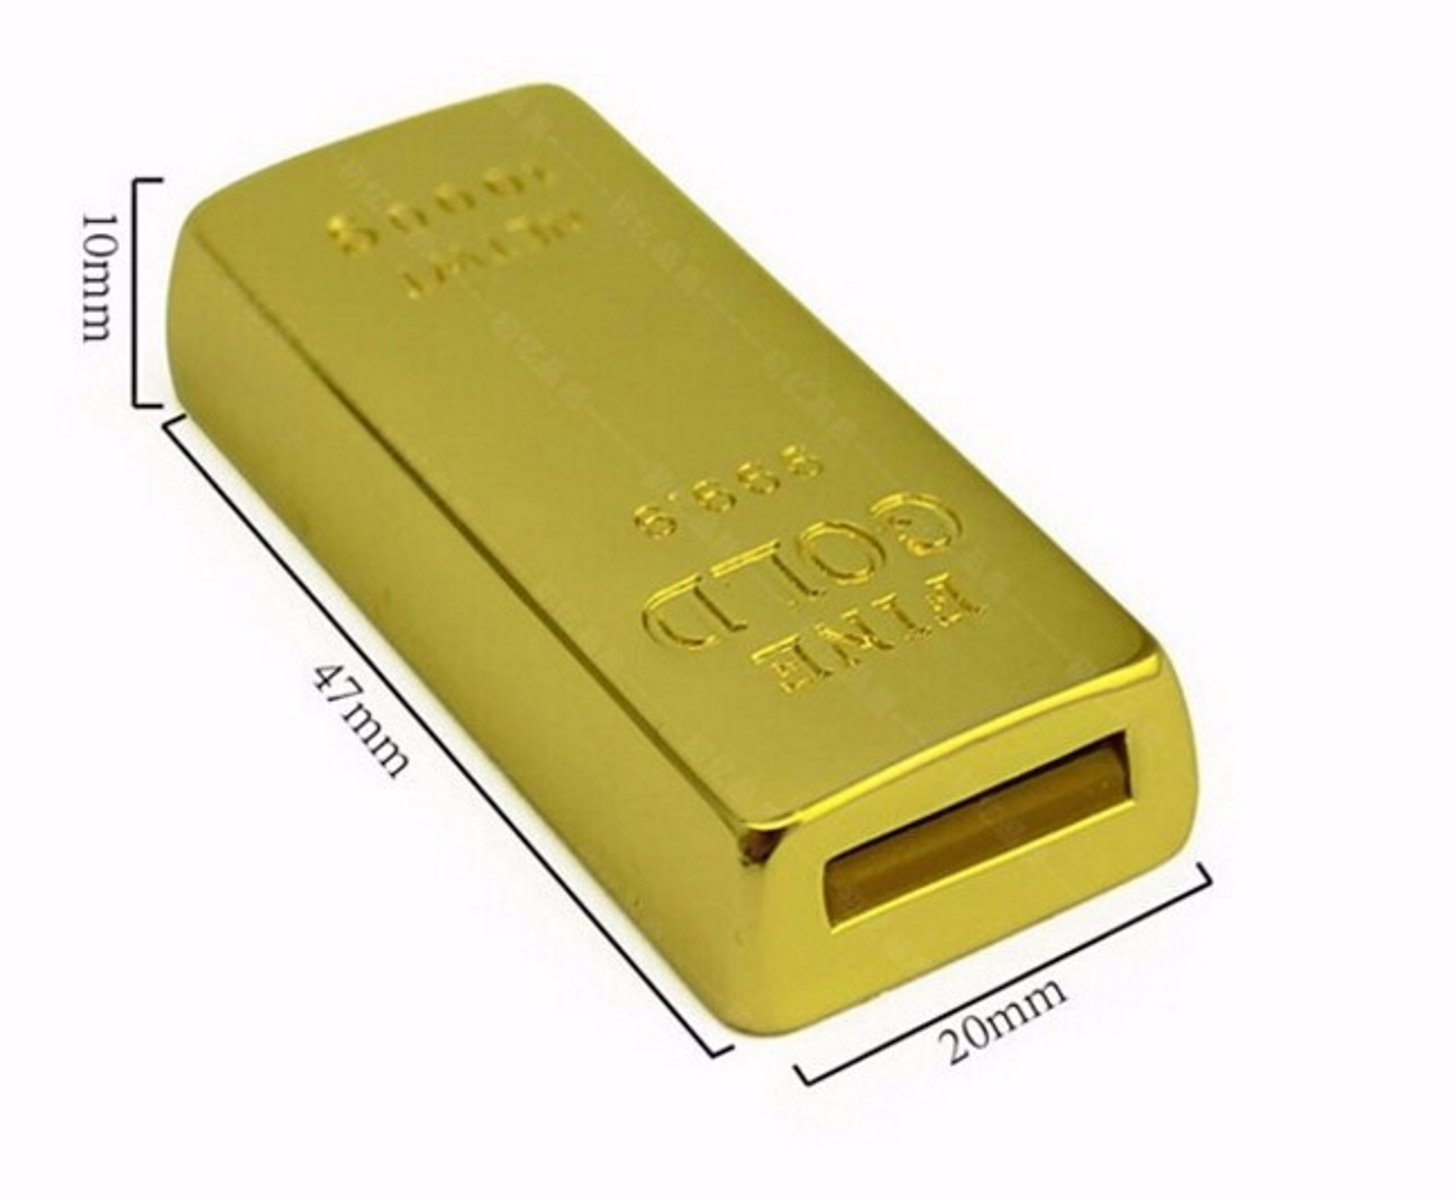 USB GERMANY Goldbarren GB) USB-Stick ® 4 (Gold